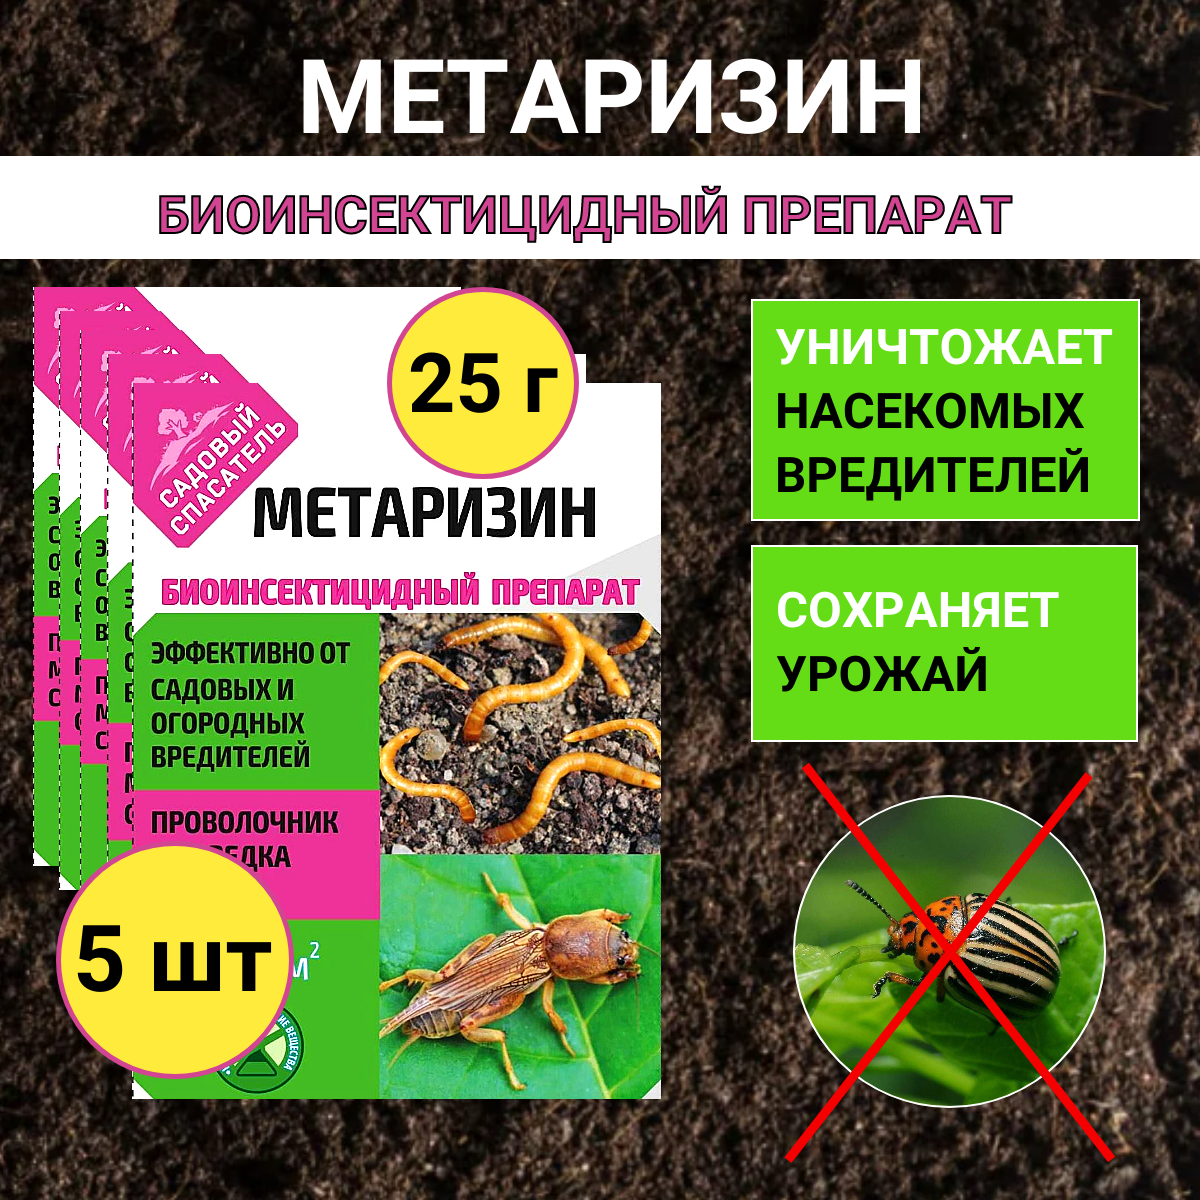 Метаризин биоинсектицид от садовых вредителей в почве 25 г, 5 шт